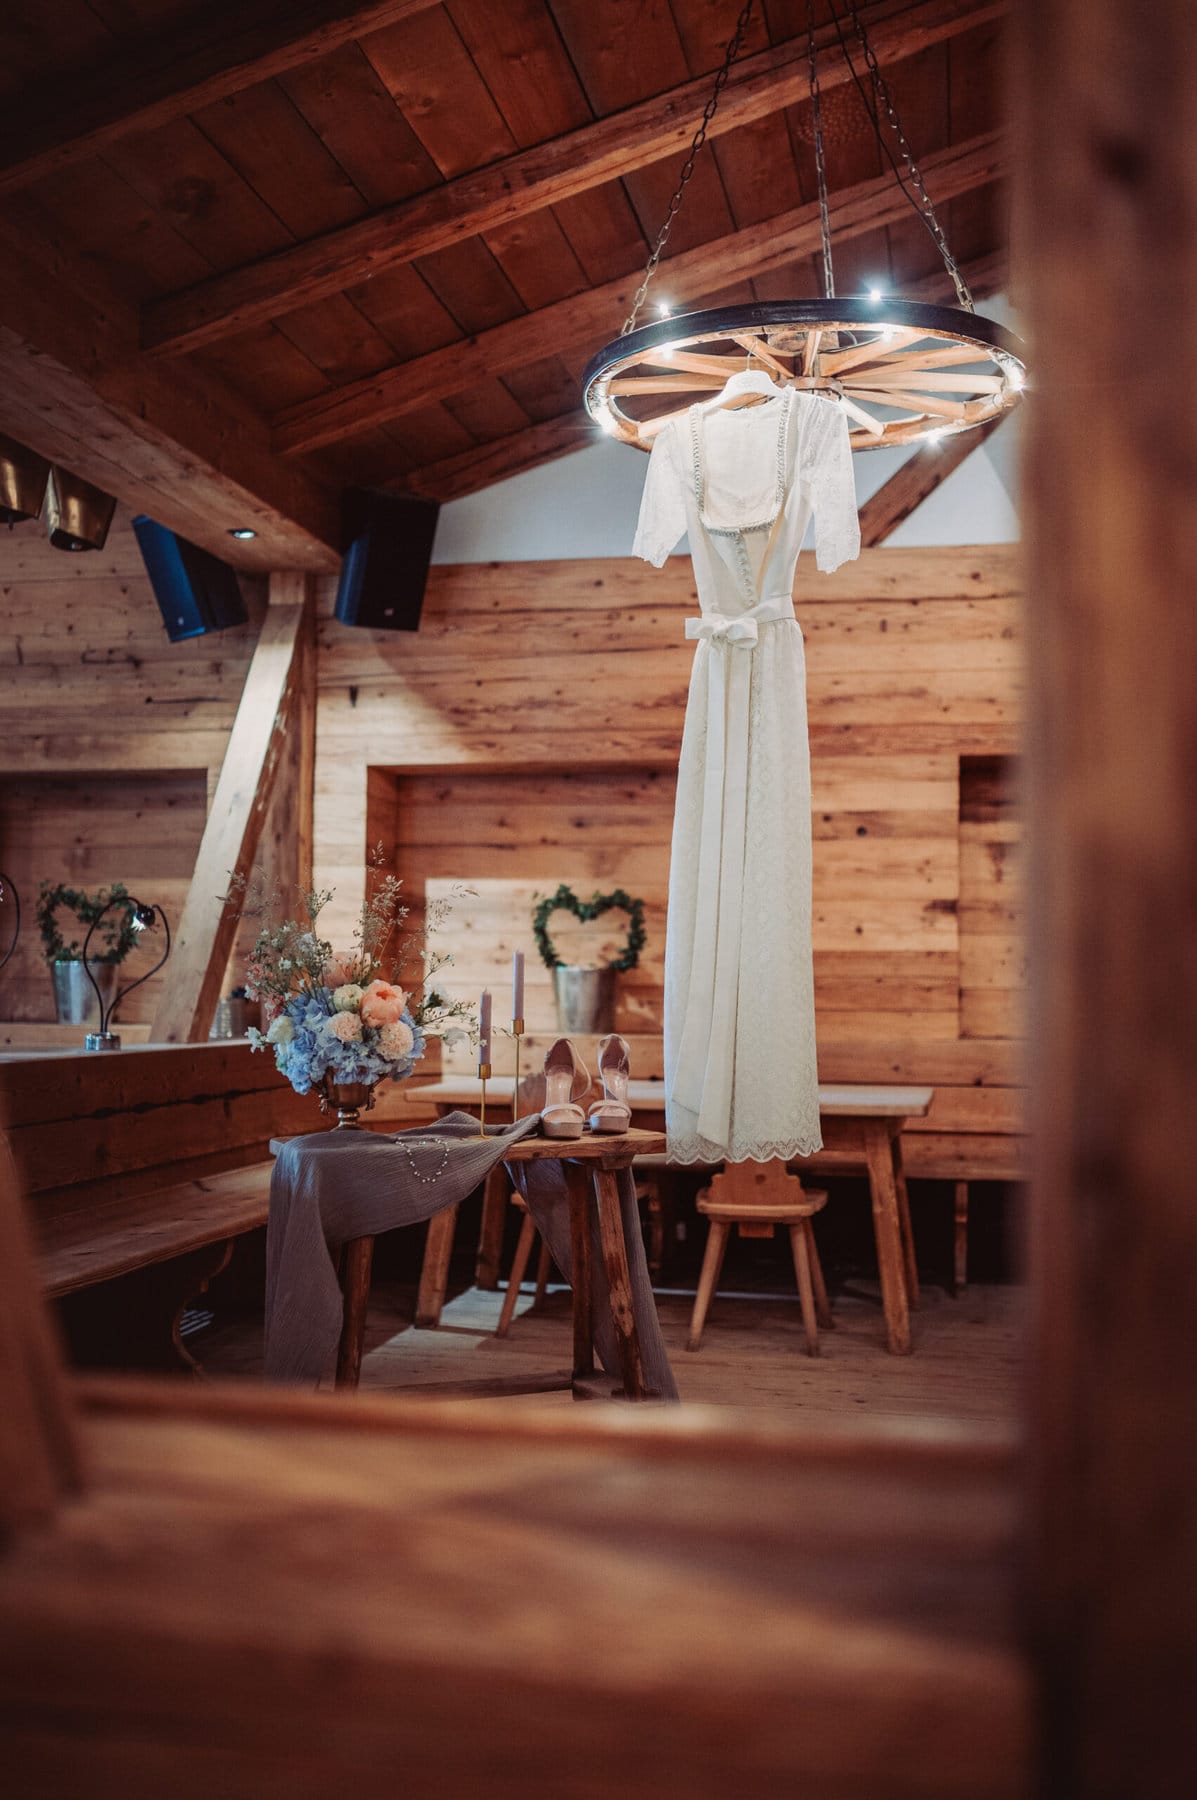 Das Getting Ready der Braut auf der Meckatzer Sportalp. In einem Raum aus Holz hängt das Brautkleid der Braut und auf einem kleinen Tisch stehen die Schuhe der Braut.